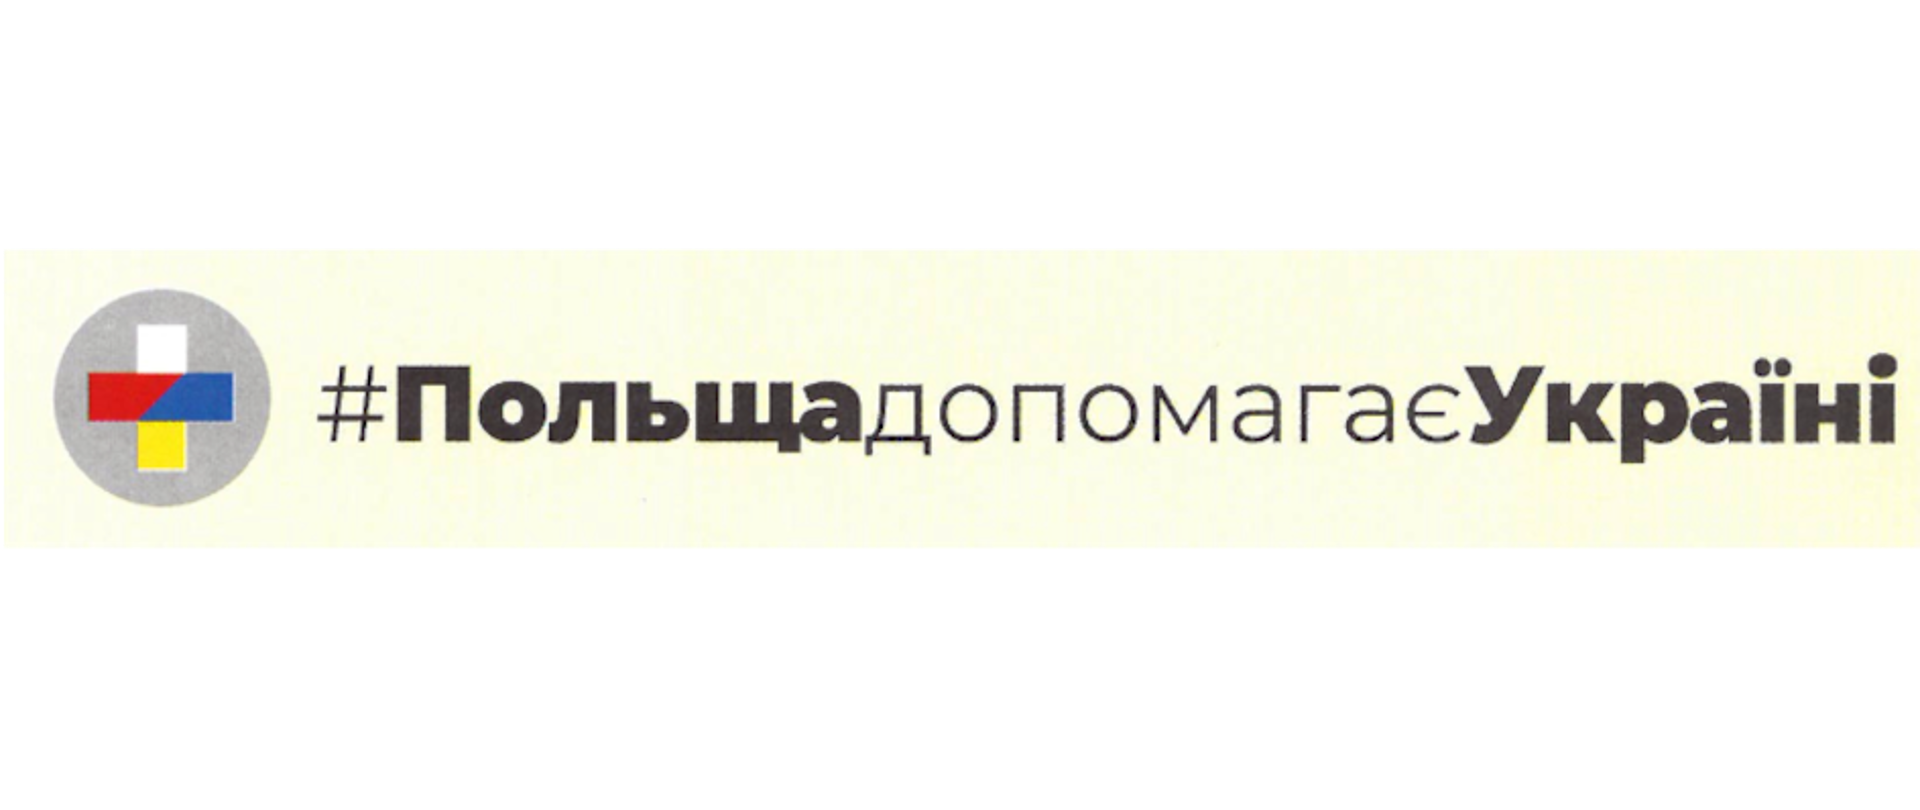 Po lewej stronie krzyżyk w szarym kole, a po prawej napis w języku ukraińskim